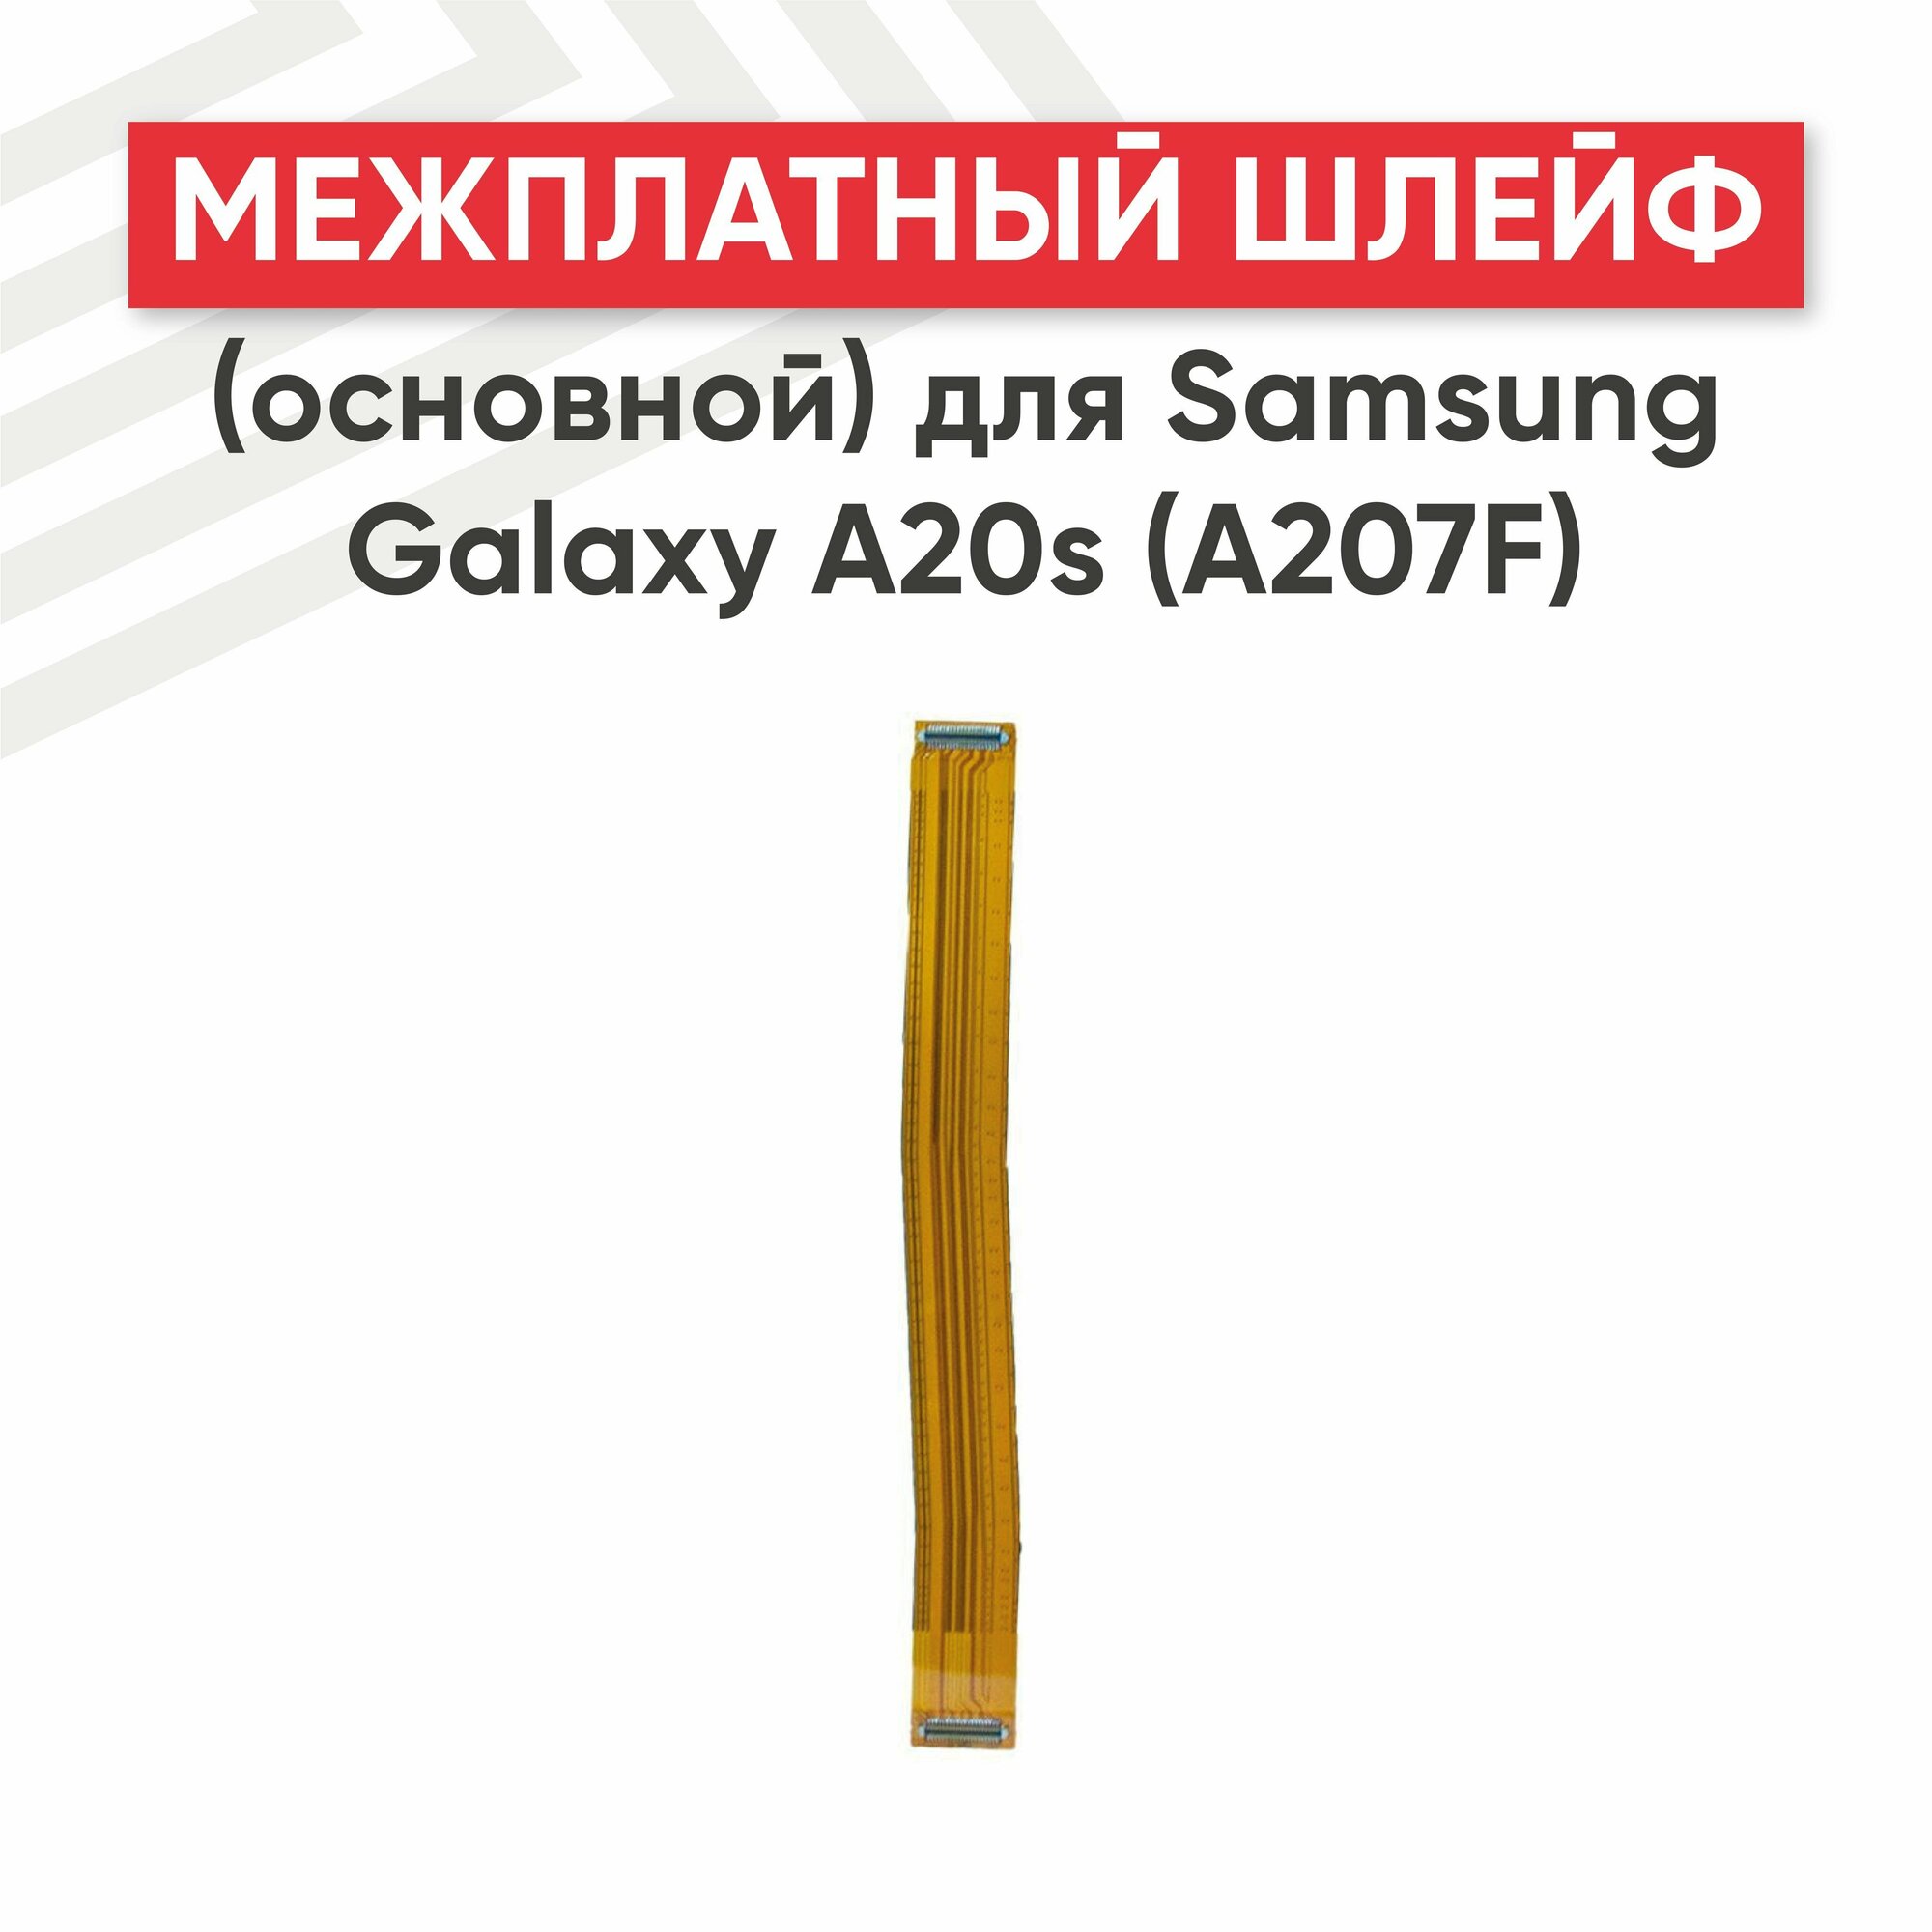 Межплатный шлейф (основной) для смартфона Samsung Galaxy A20s (A207F)